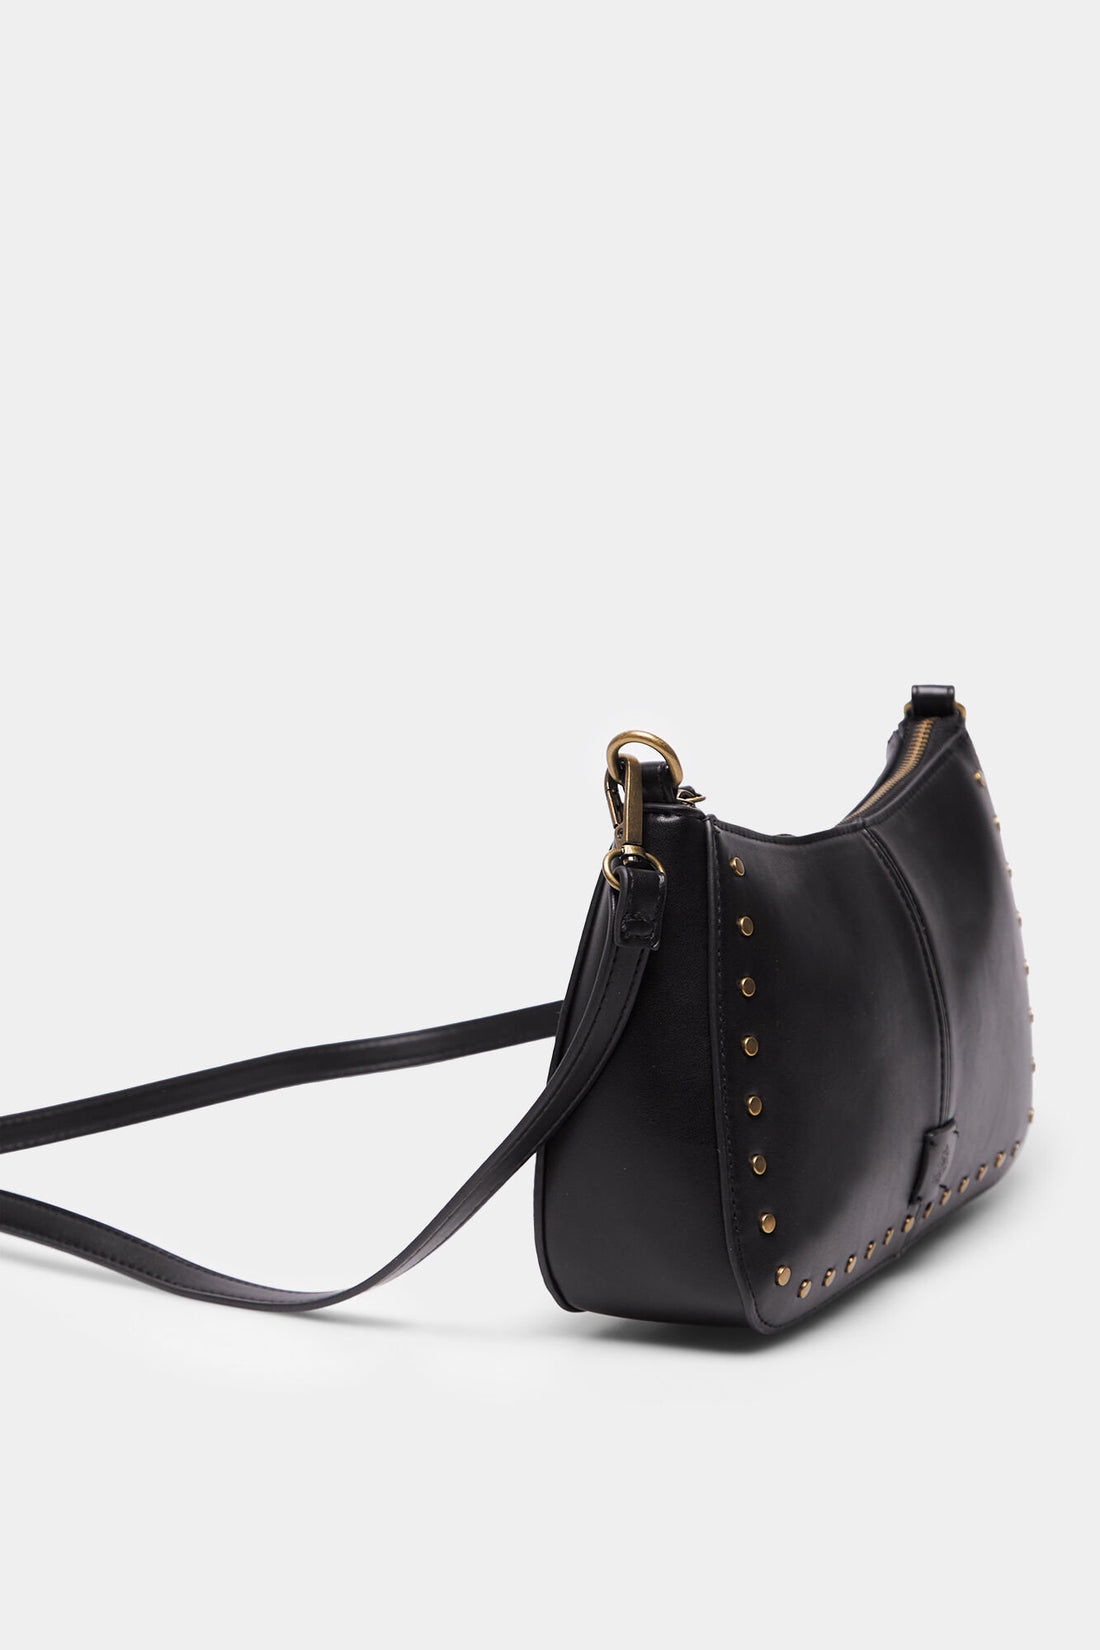 Black Shoulder Bag With Braided Strap_8527381_01_02